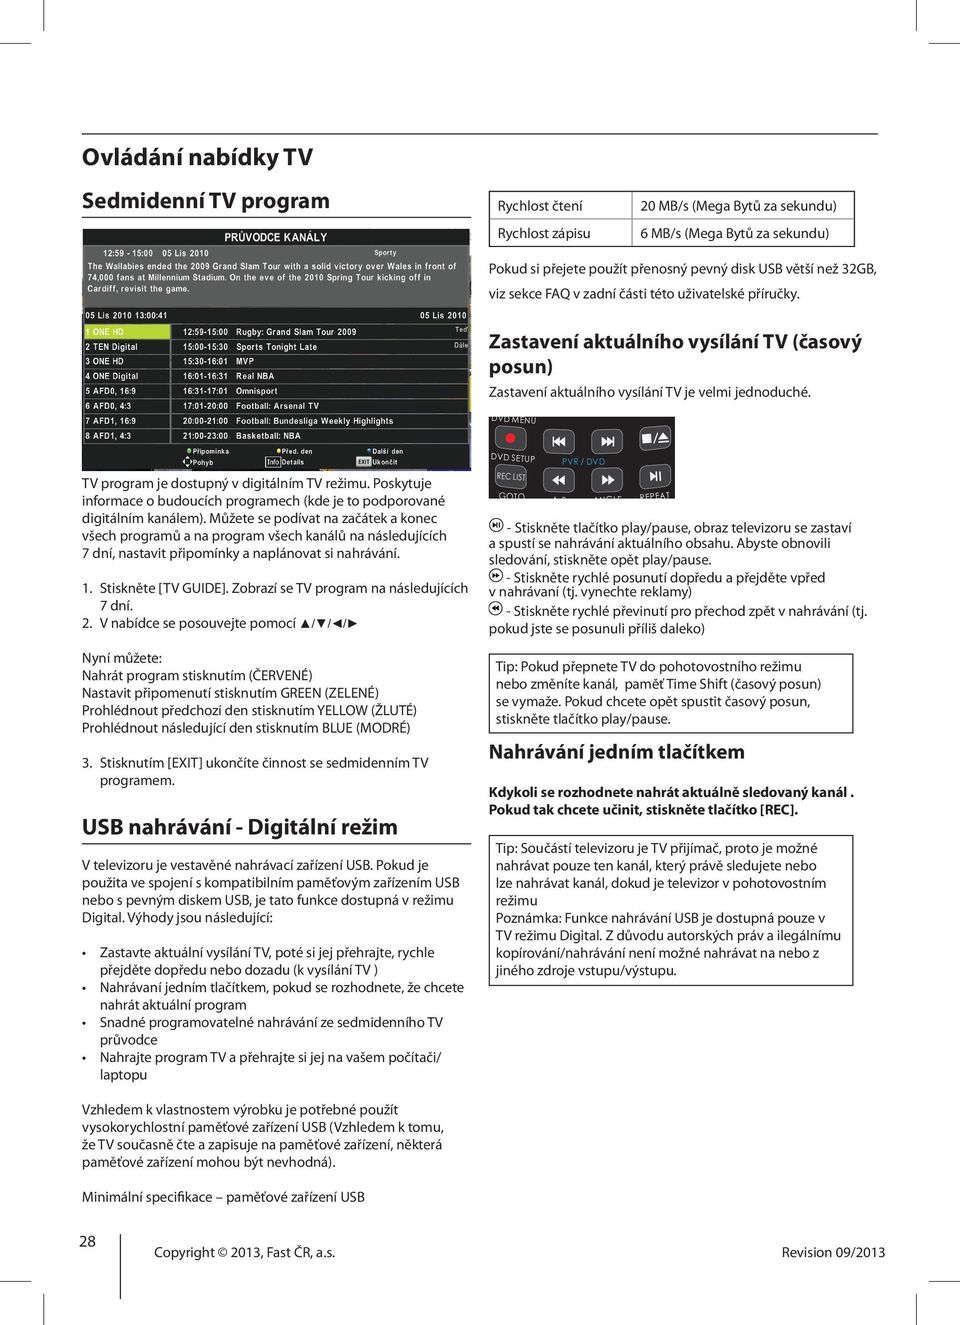 U U js V s P n p DVD MENU TV program je dostupný v digitálním TV režimu. Poskytuje informace o budoucích programech (kde je to podporované digitálním kanálem).